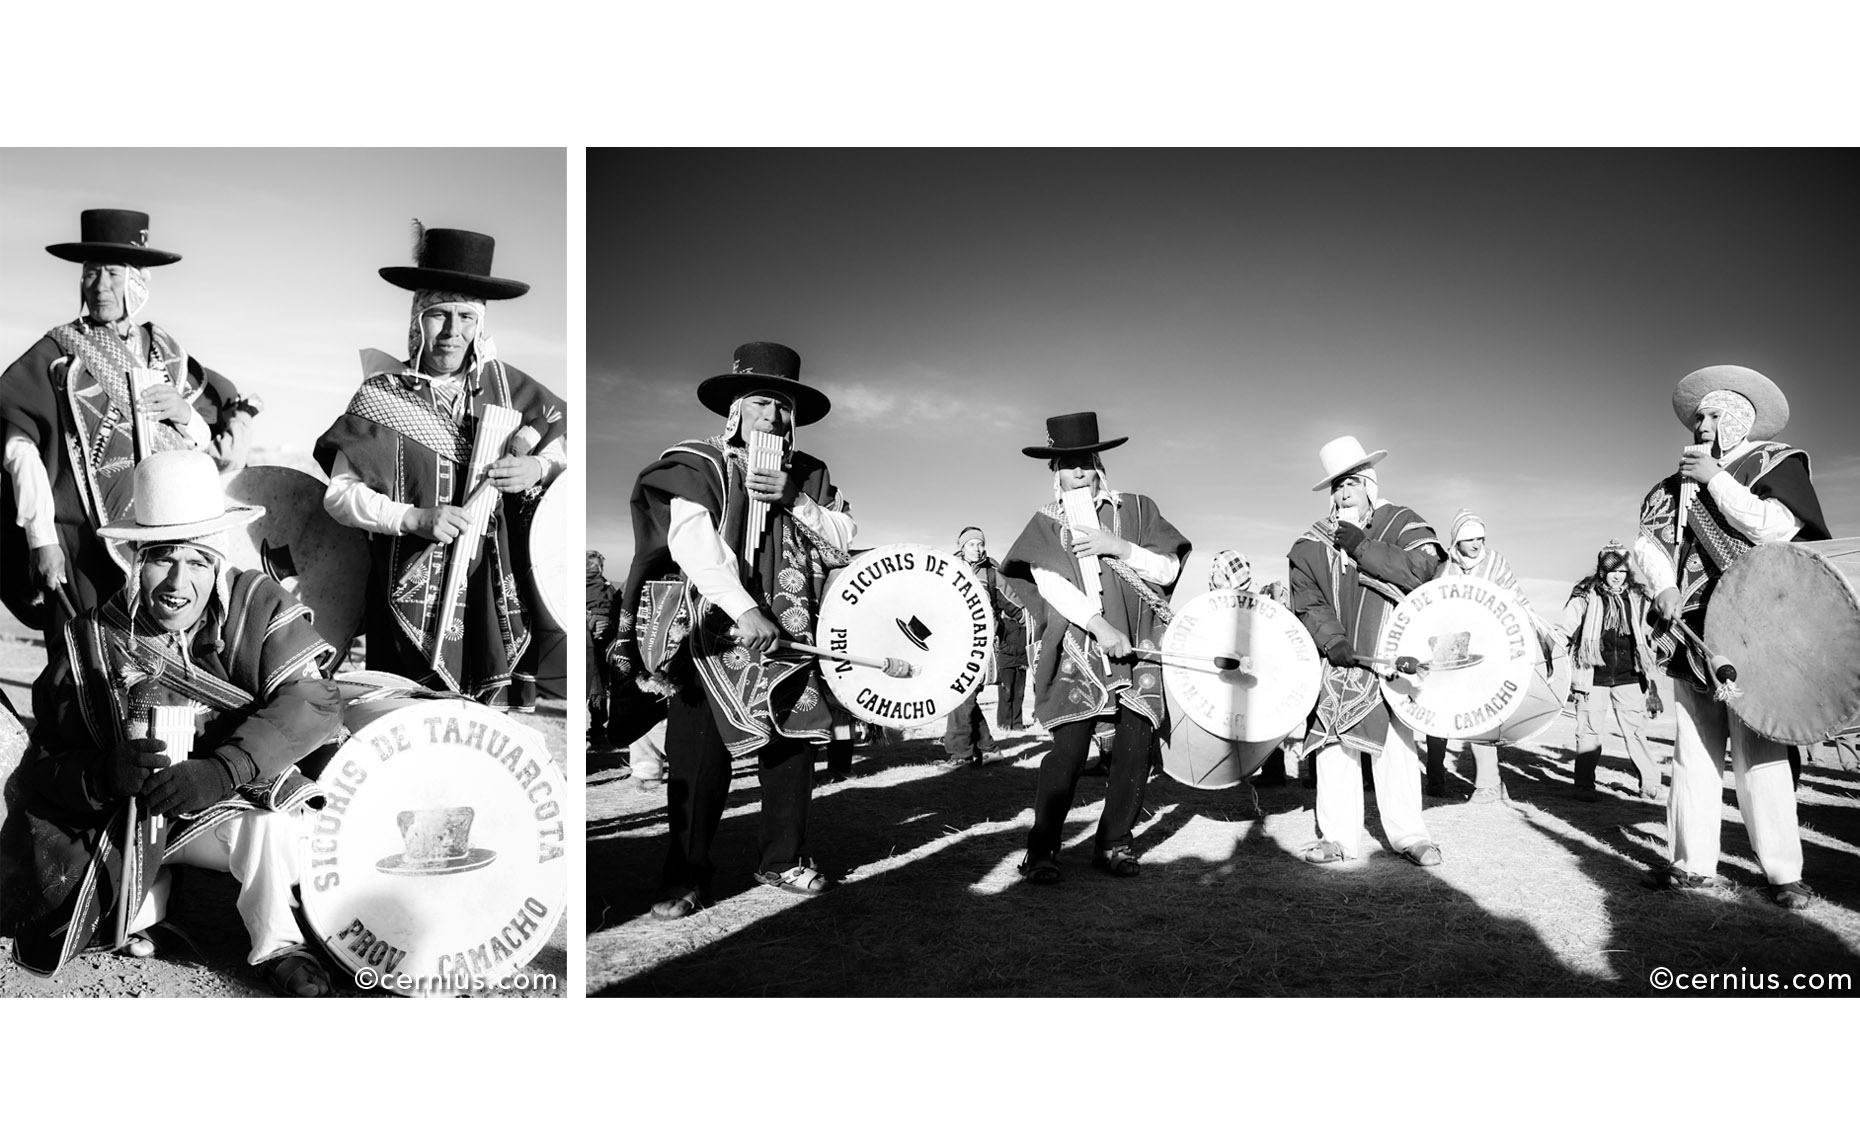 Indigenous Musicians in Bolivia, 2012 | Juozas Cernius